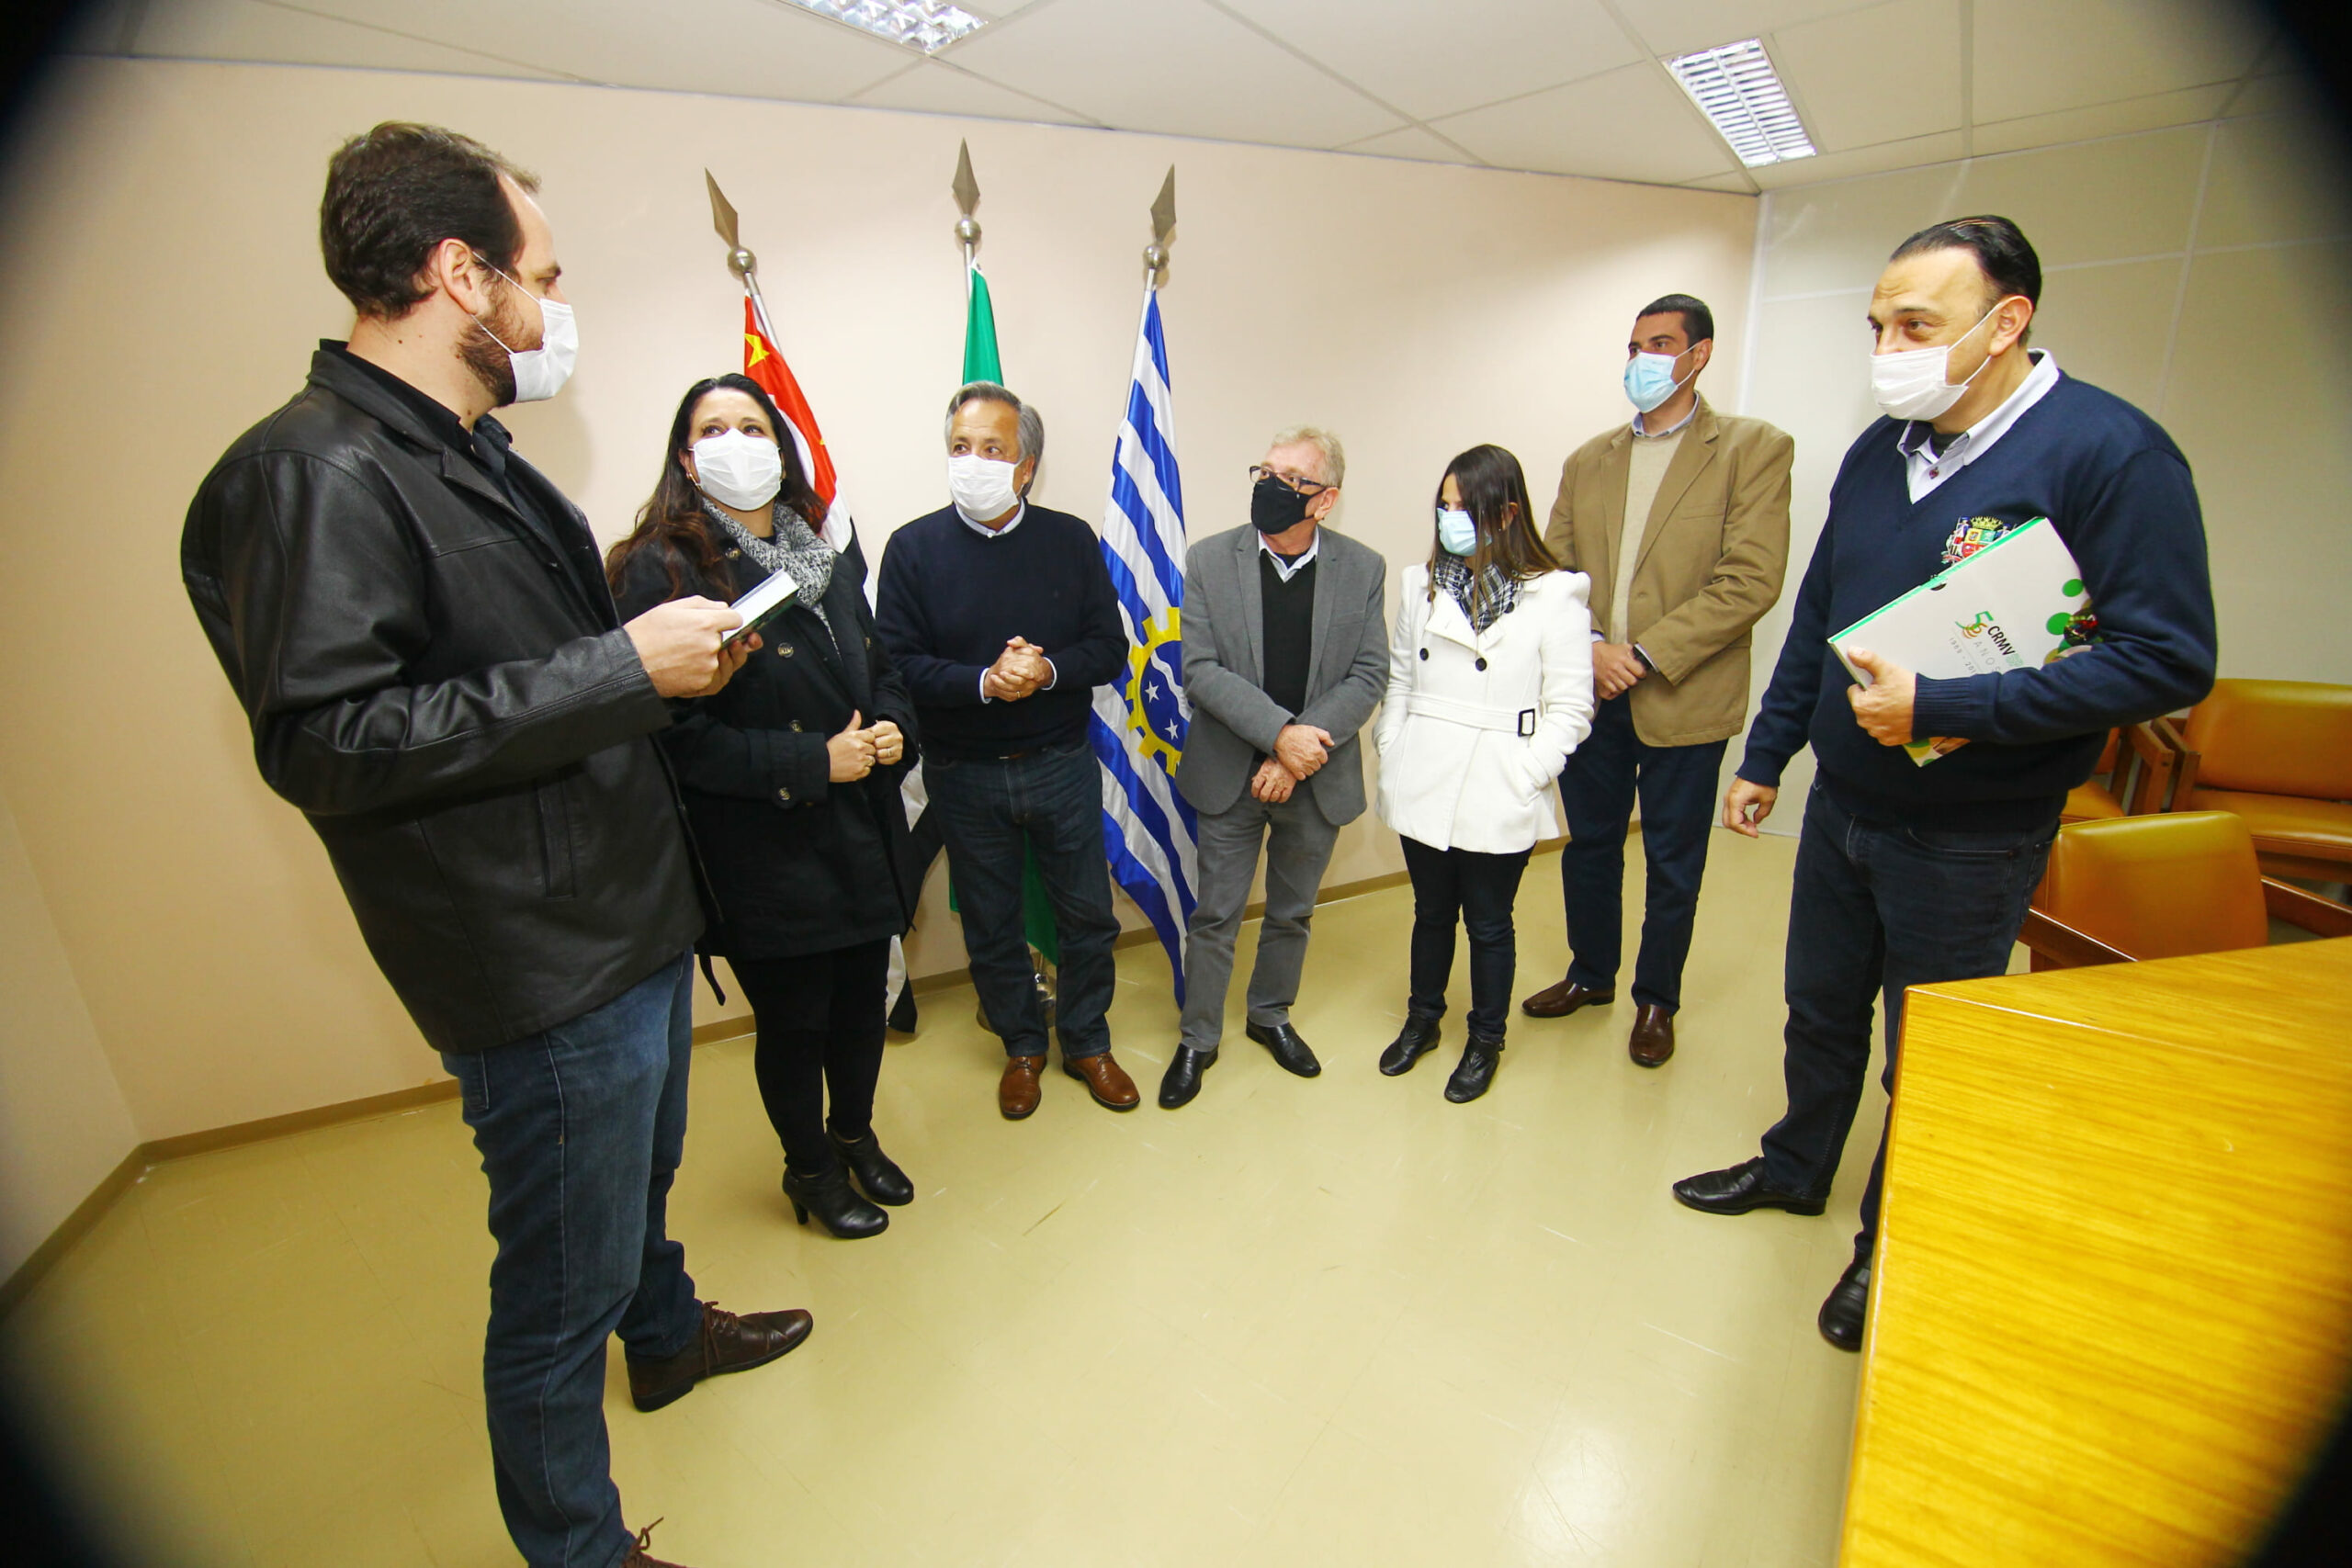 Em pé, conversando frente as bandeiras da cidade, do estado e do Brasil, estão os representantes do CRMV-SP e da Prefeitura de São José dos Campos